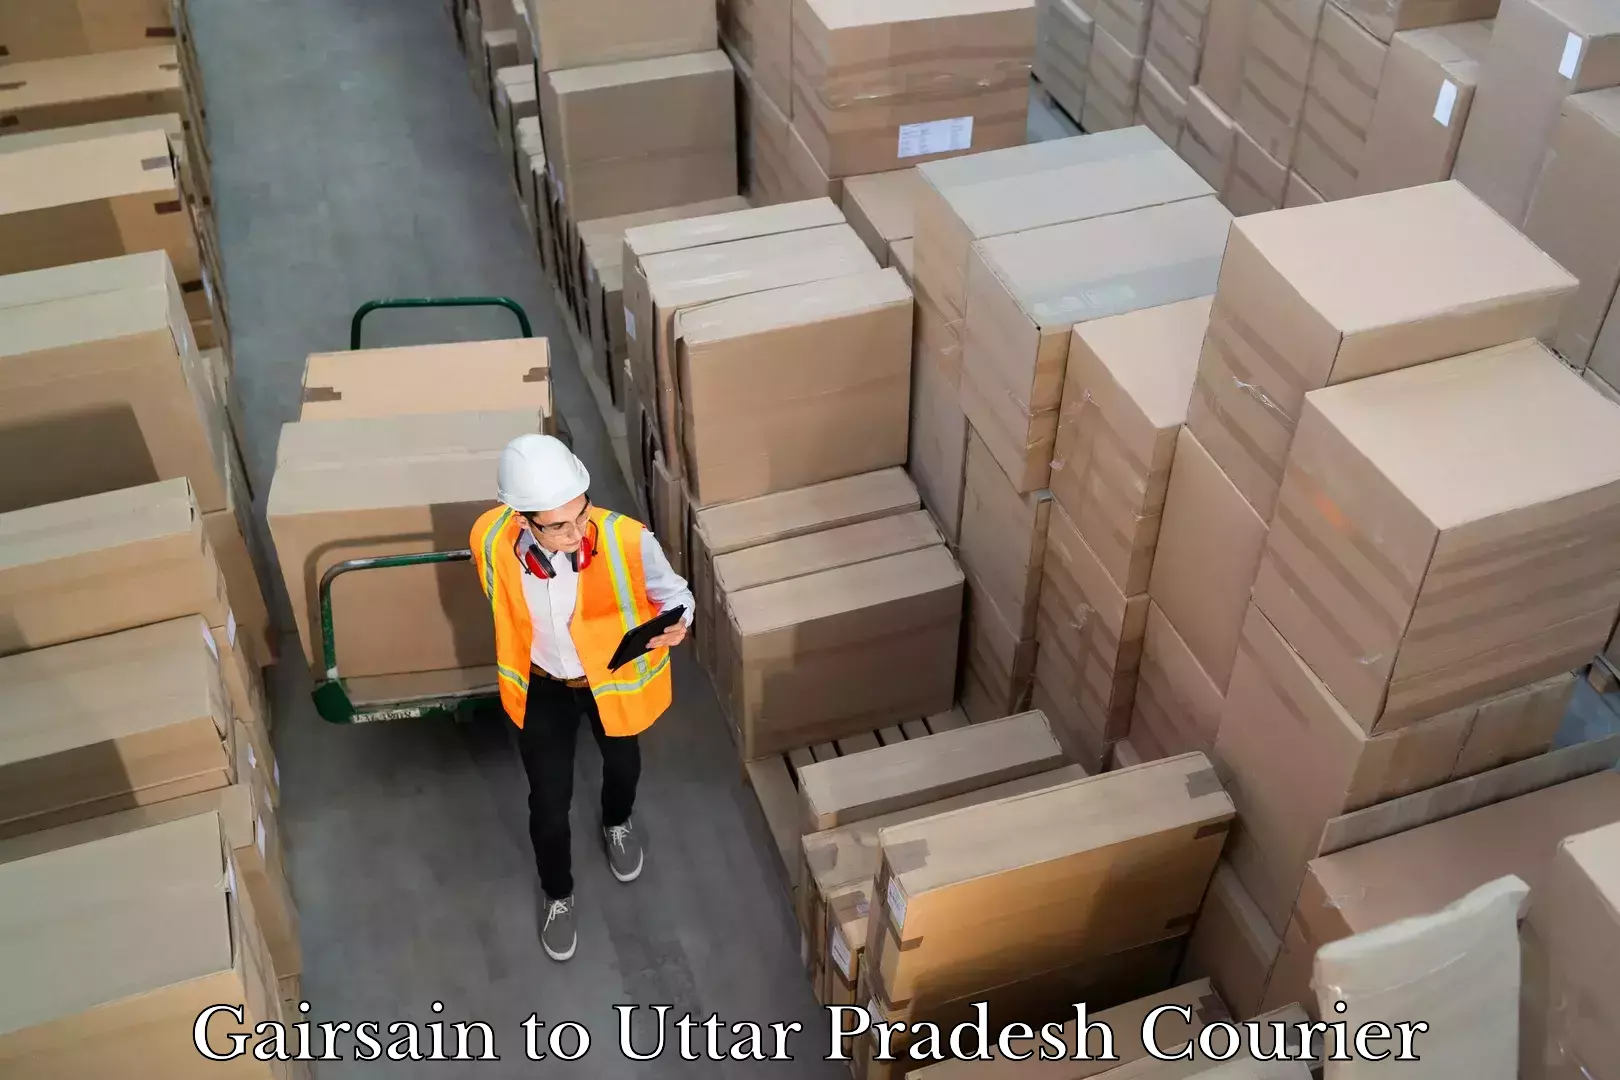 Courier service efficiency in Gairsain to Uttar Pradesh